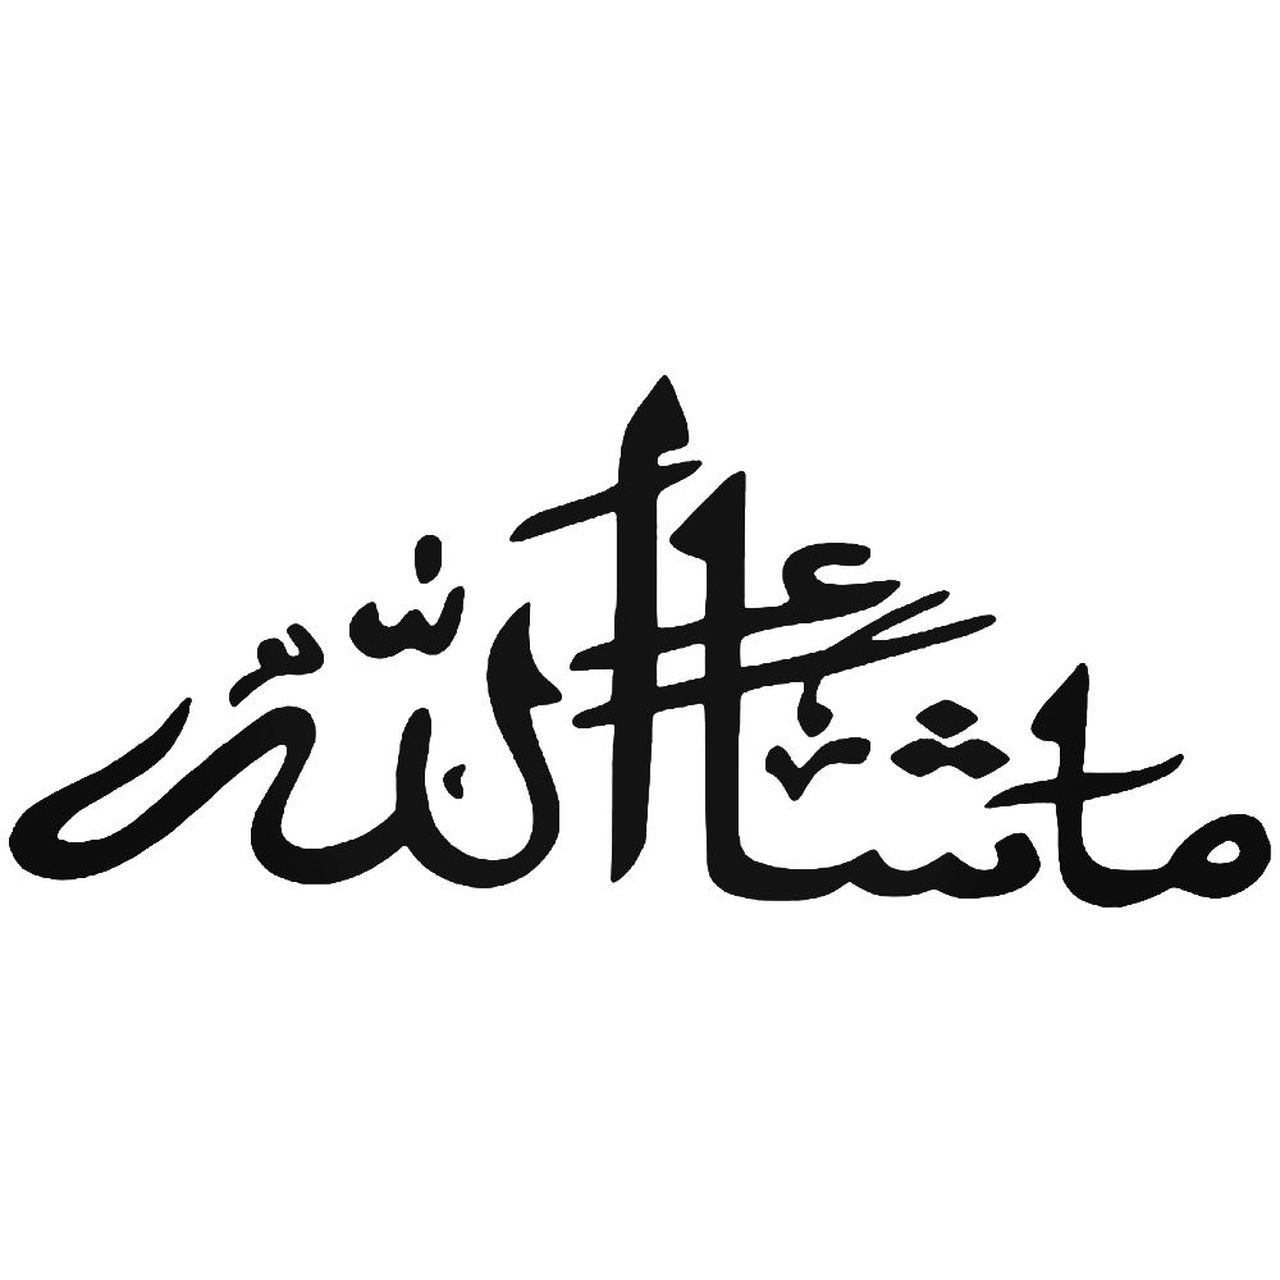 Машааллах это. МАШААЛЛАХ. MASHAALLAH на арабском. Машаллах надпись. Машаллах надпись на арабском.